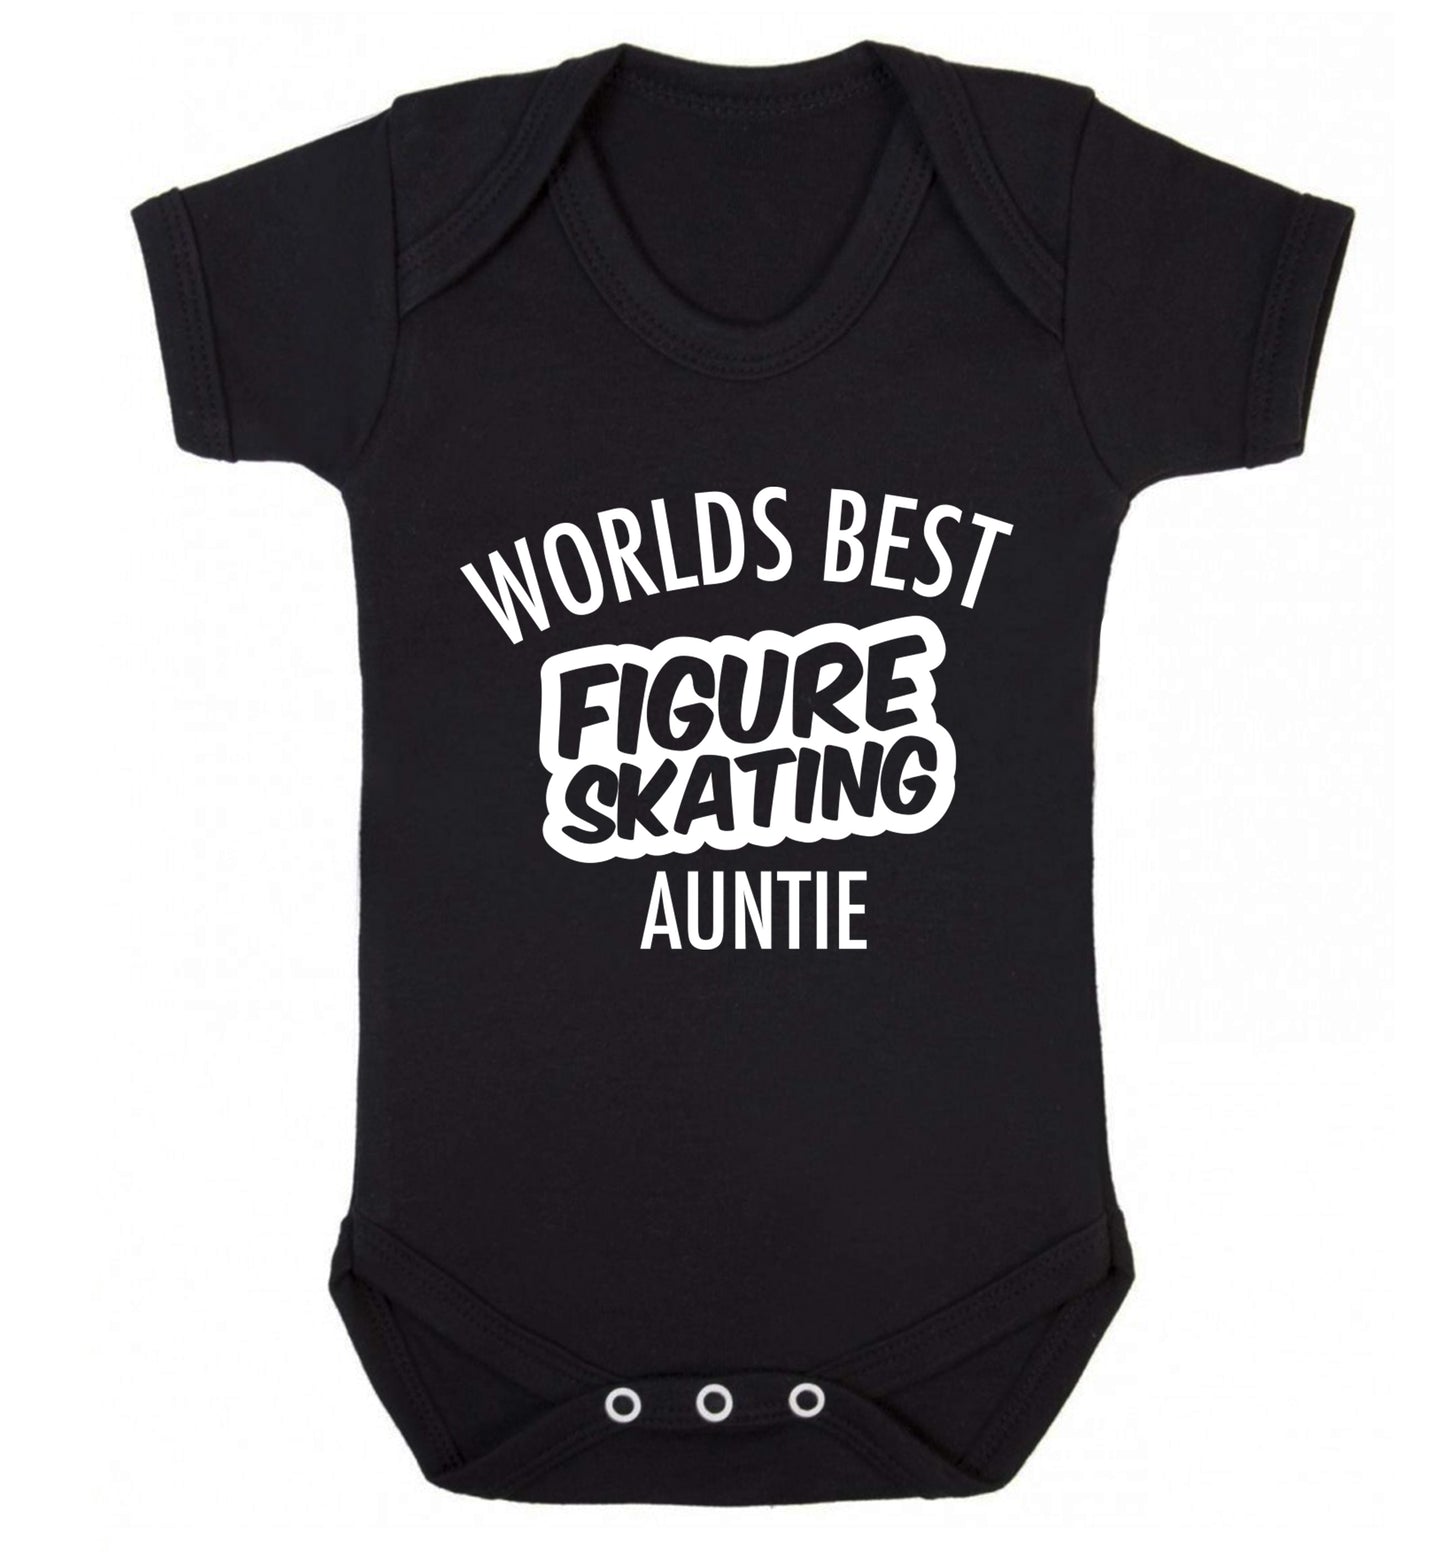 Worlds best figure skating auntie Baby Vest black 18-24 months